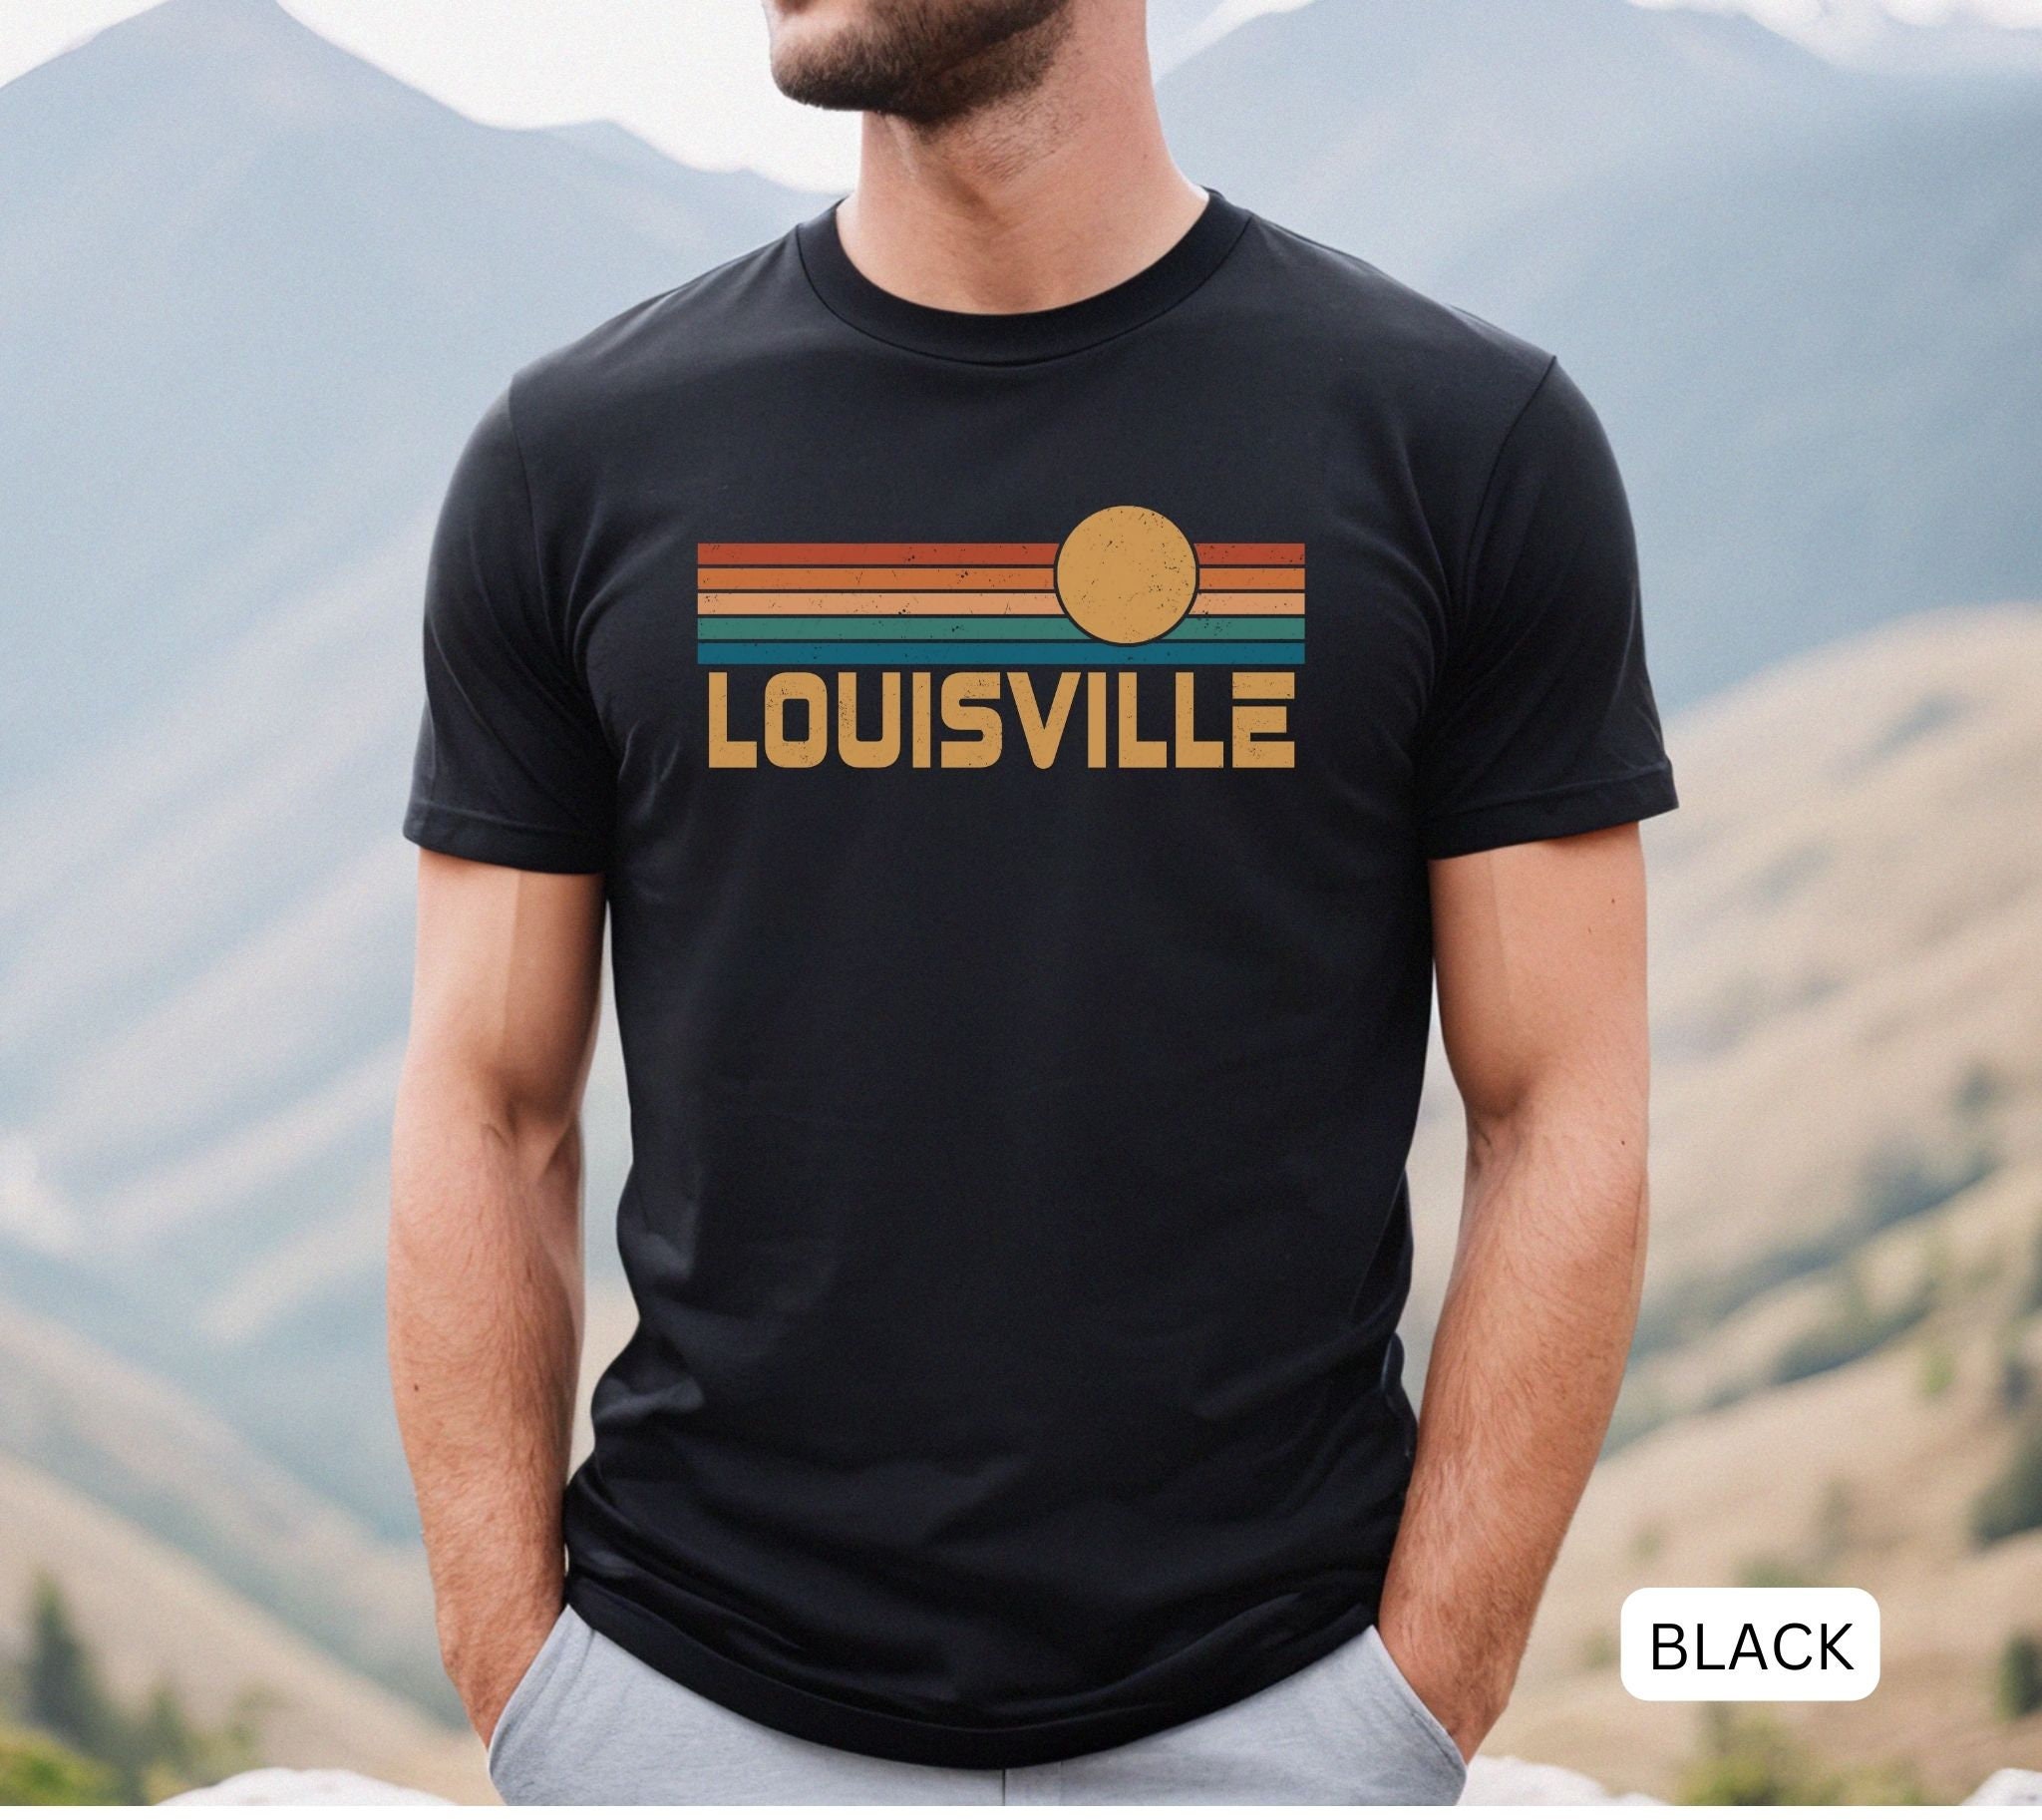 louisville shirt for men